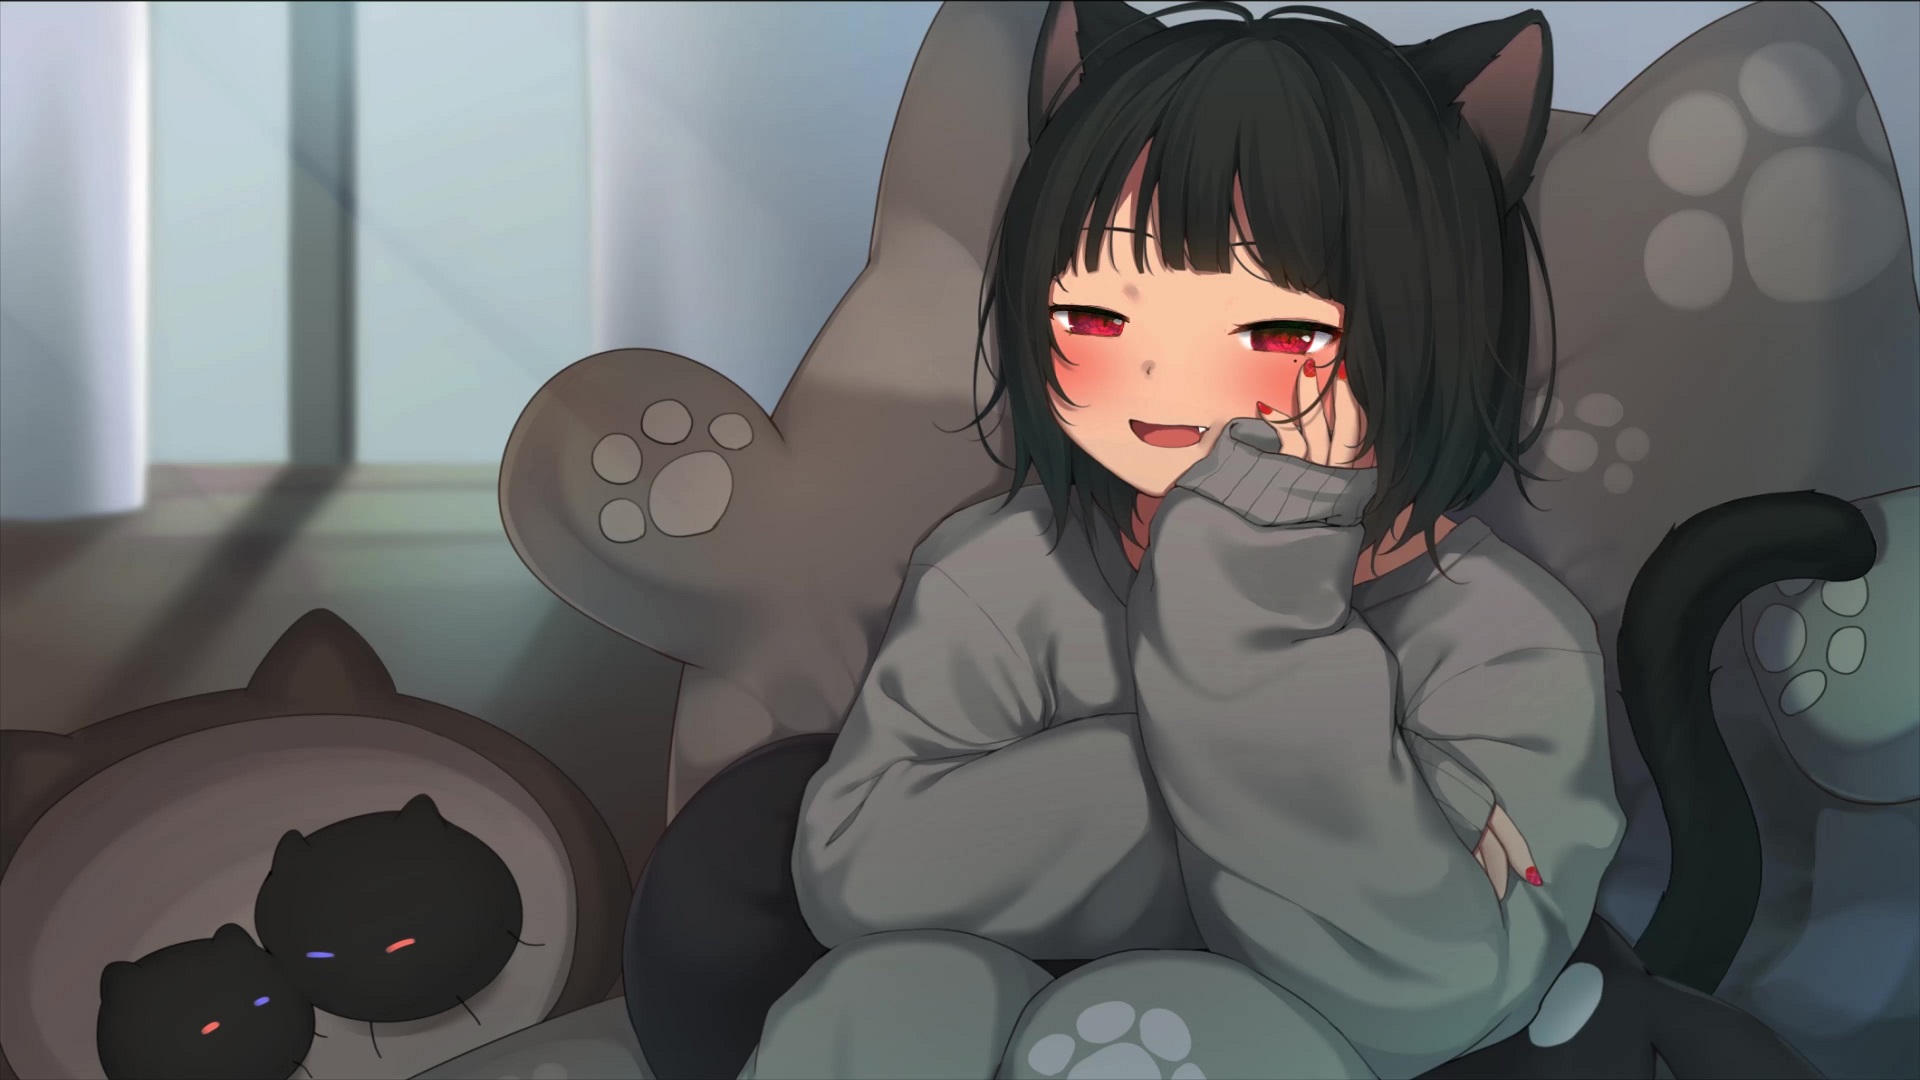 Cute Anime Cat Girl Live Wallpaper - MoeWalls